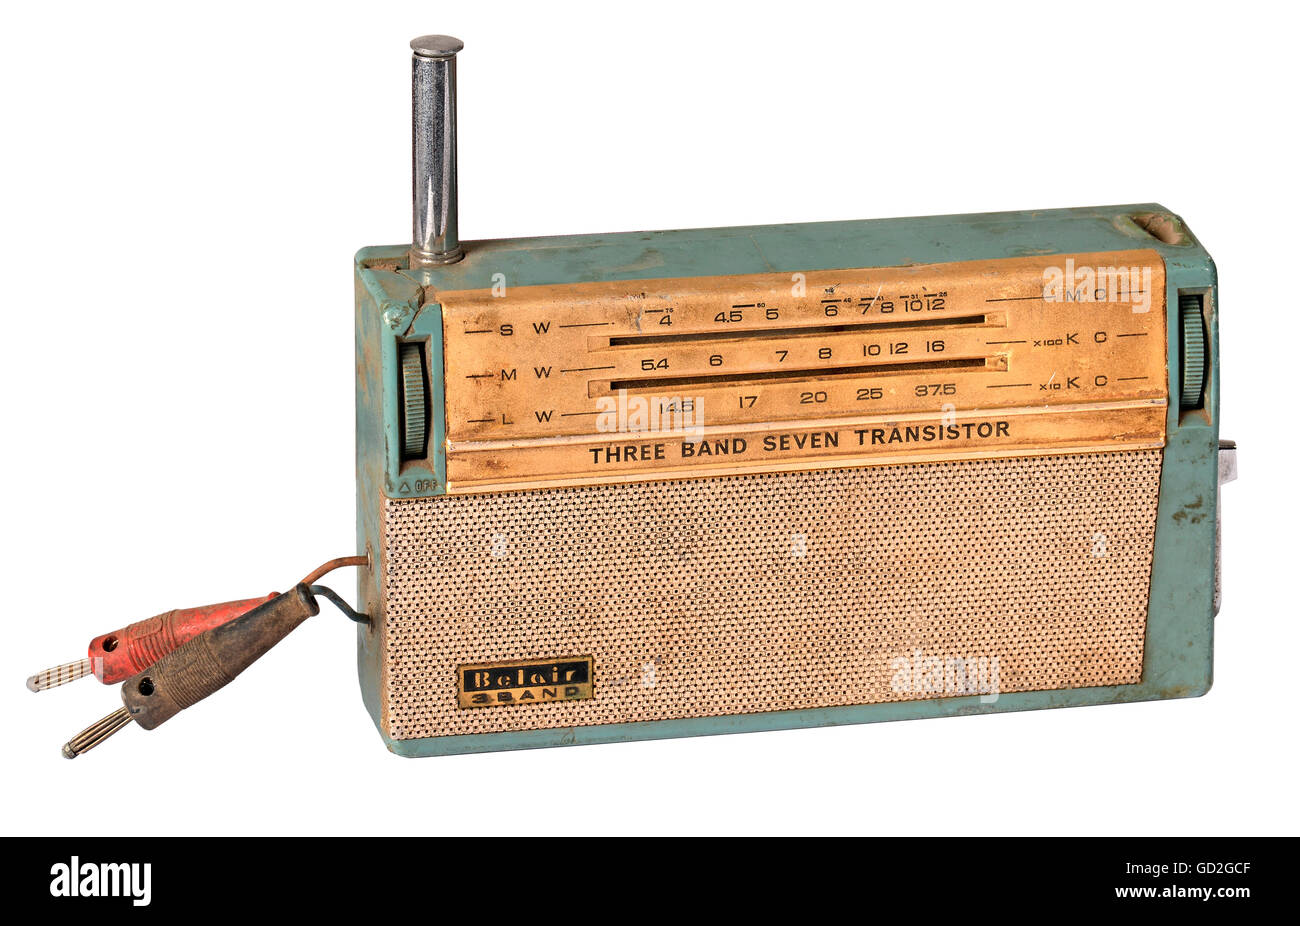 Broadcast, radio, petite radio à transistor japonaise, transistor Belair 7, prise casque latérale via les deux câbles, Japon, vers 1960, droits supplémentaires-Clearences-non disponible Banque D'Images